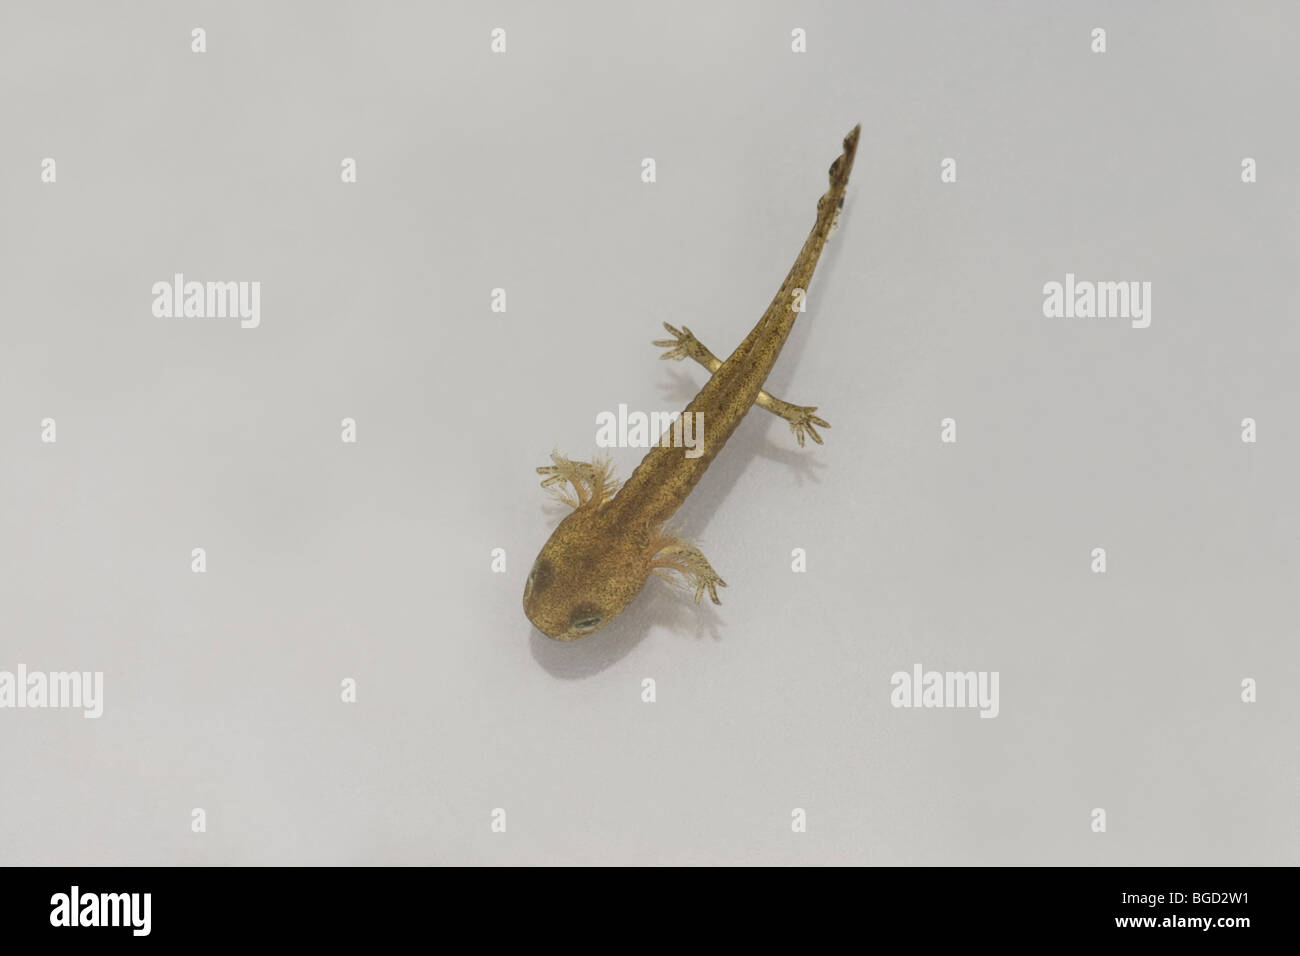 European Fire Salamander (Salamandra salamandra). Larva or tadpole. Stock Photo